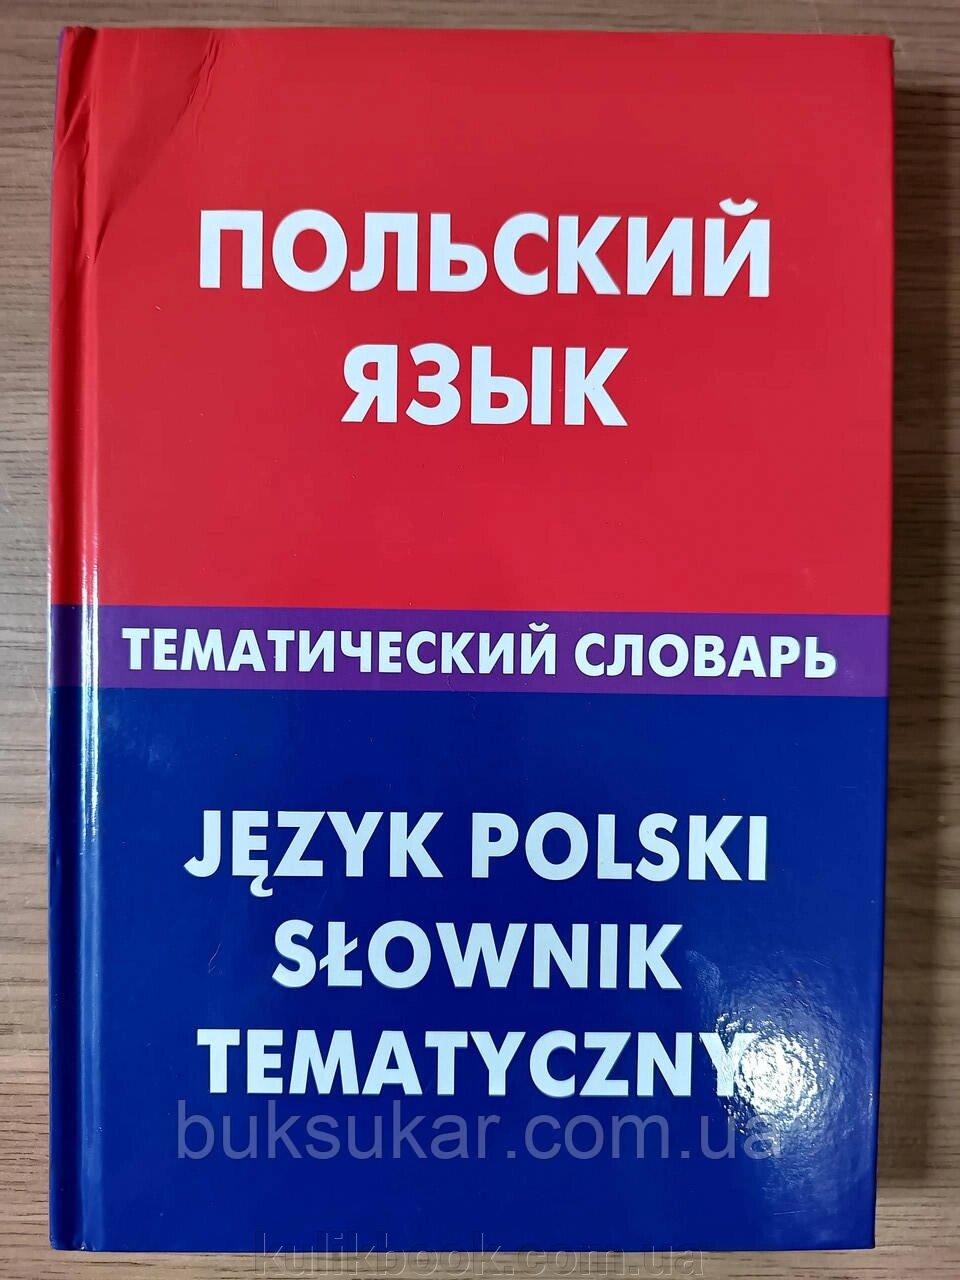 Книга: Польська мова. Тематичний словник. 20000 слів від компанії Буксукар - фото 1